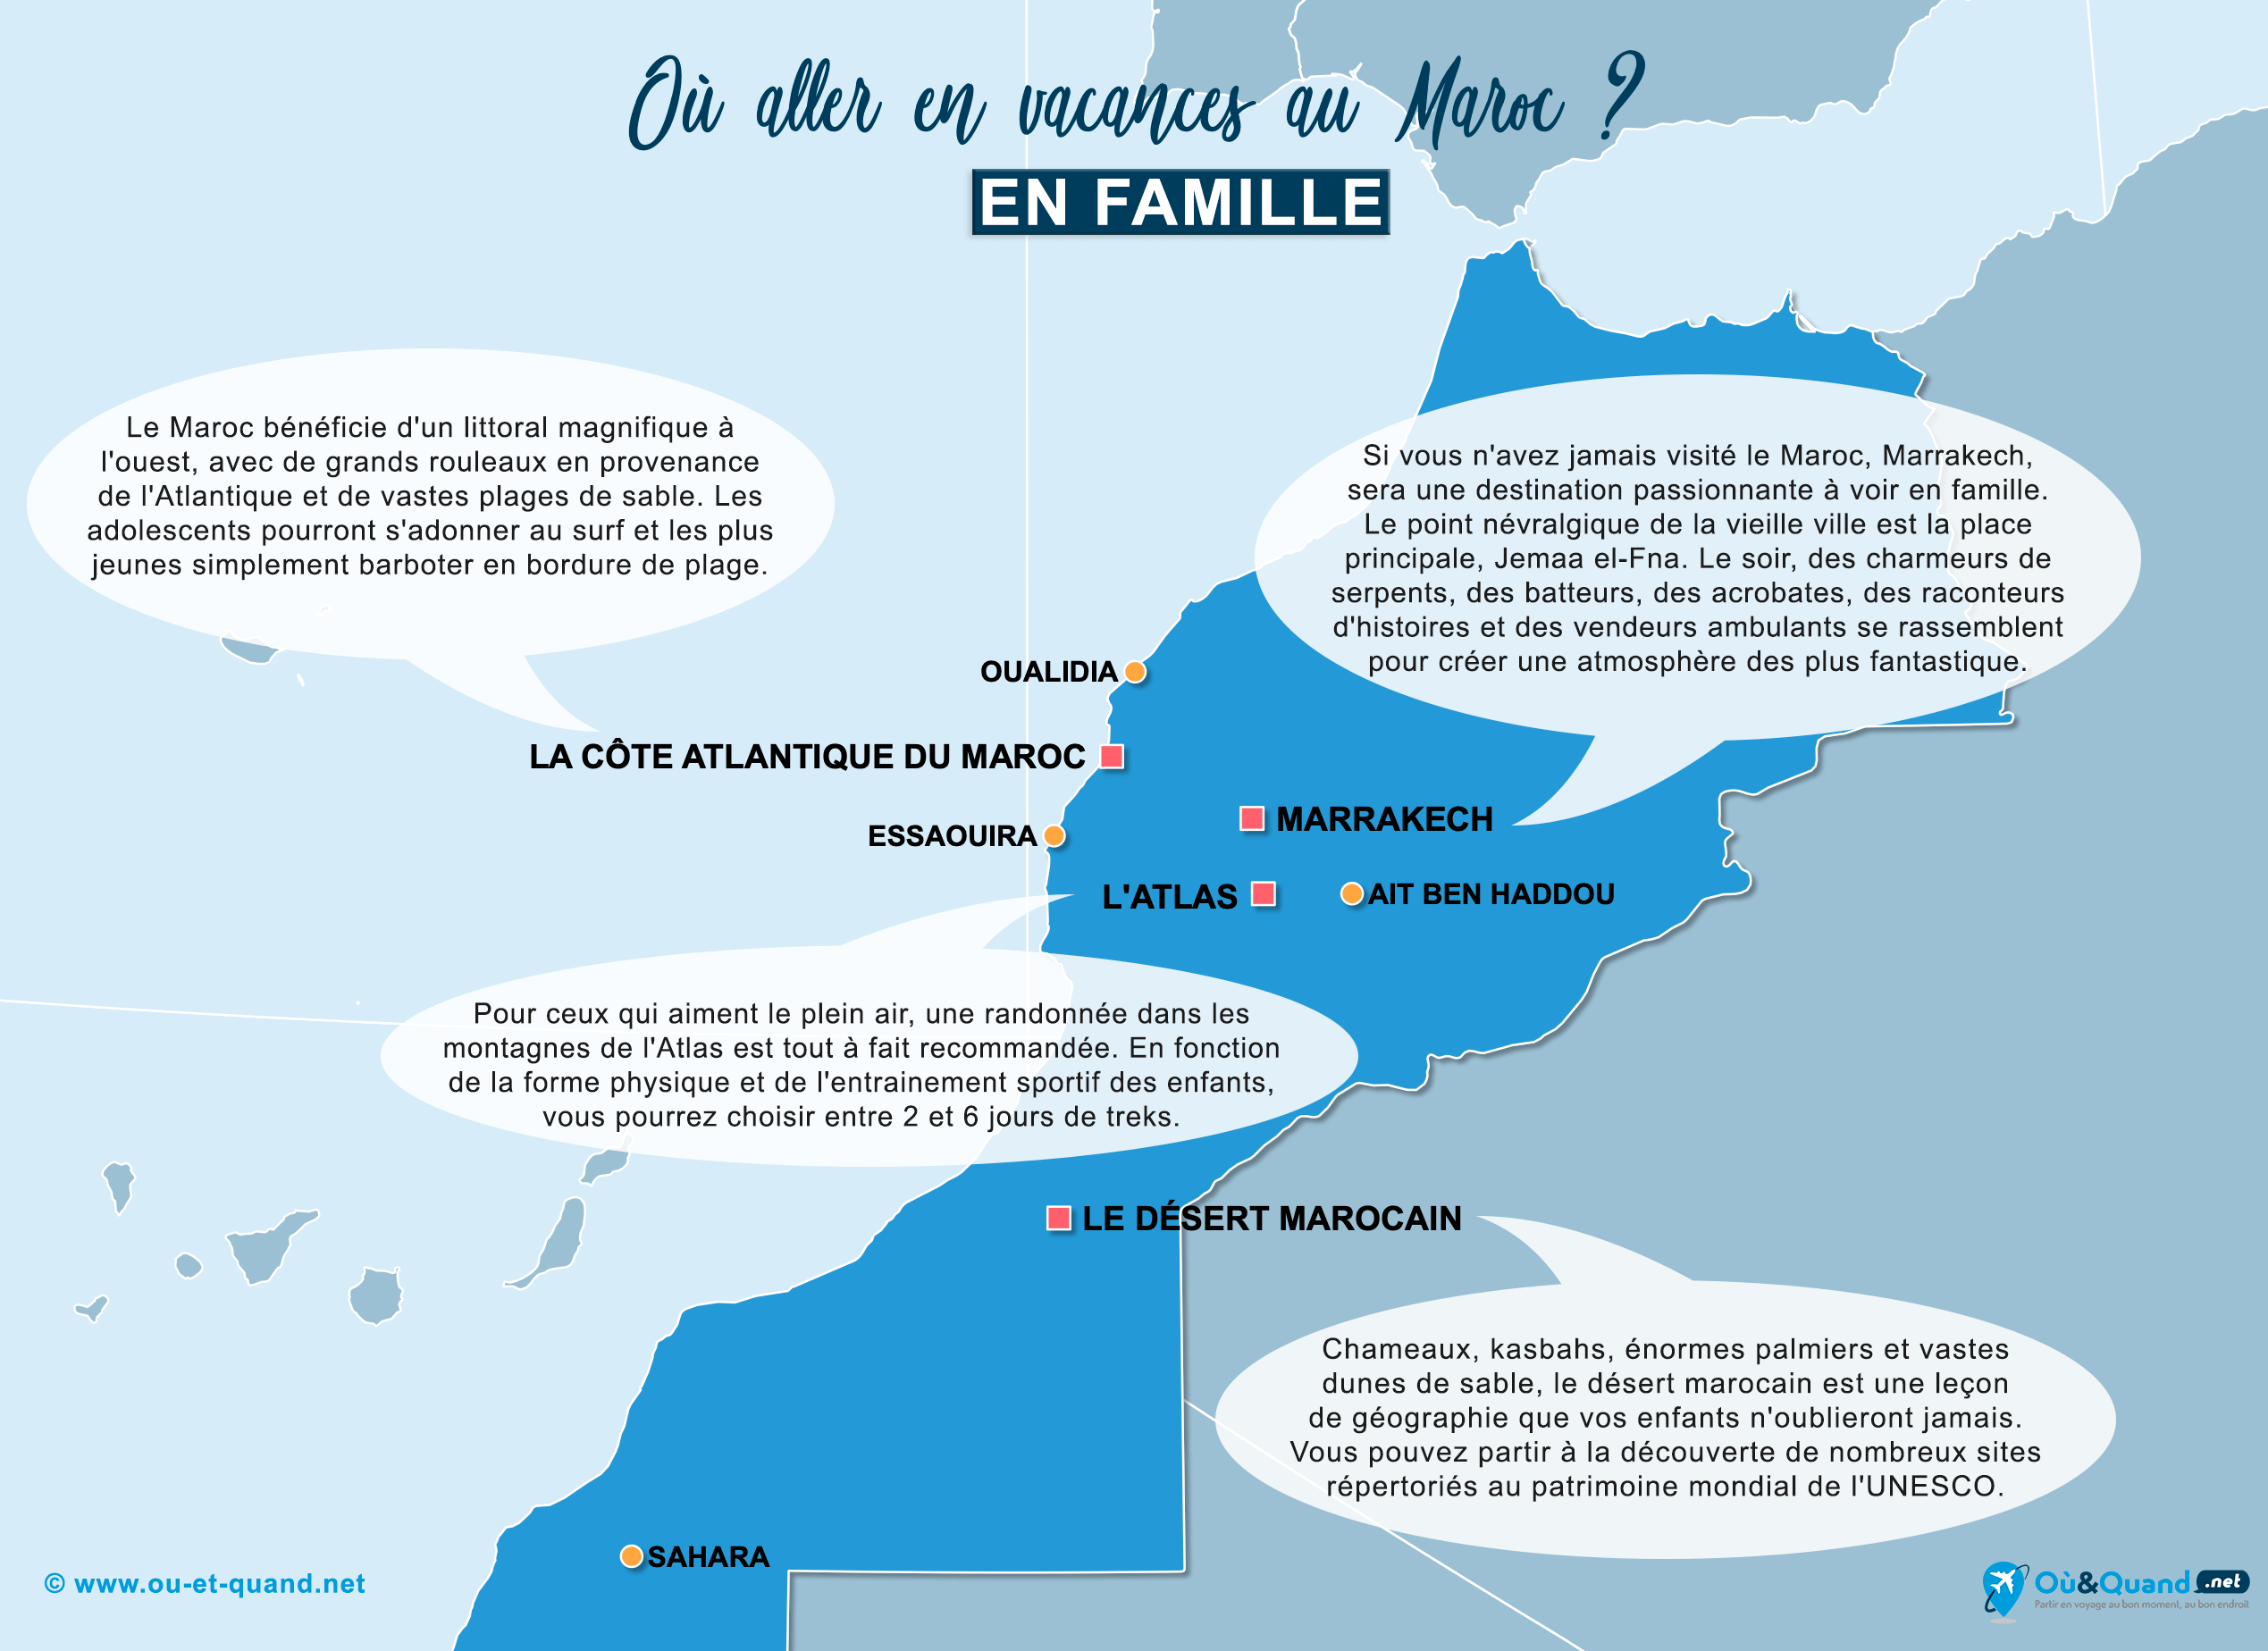 La carte des endroits au Maroc où aller en vacances en famille